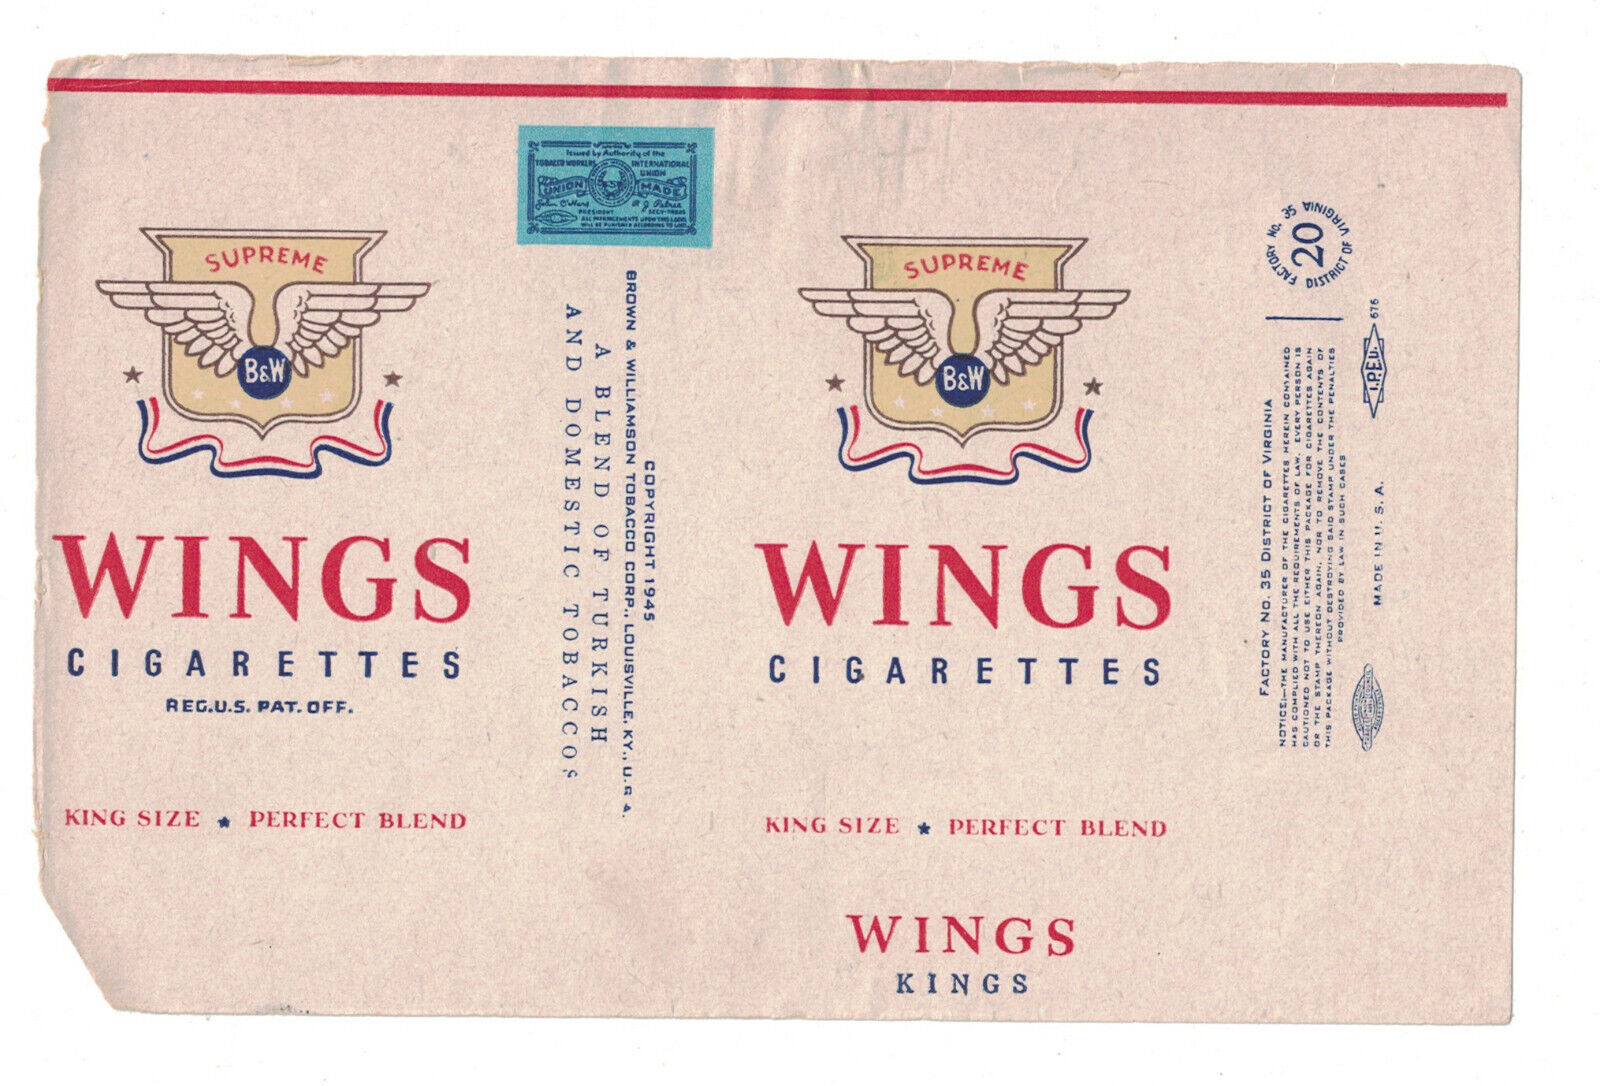 Wings Cigarette Packaging Label - Supreme Kings